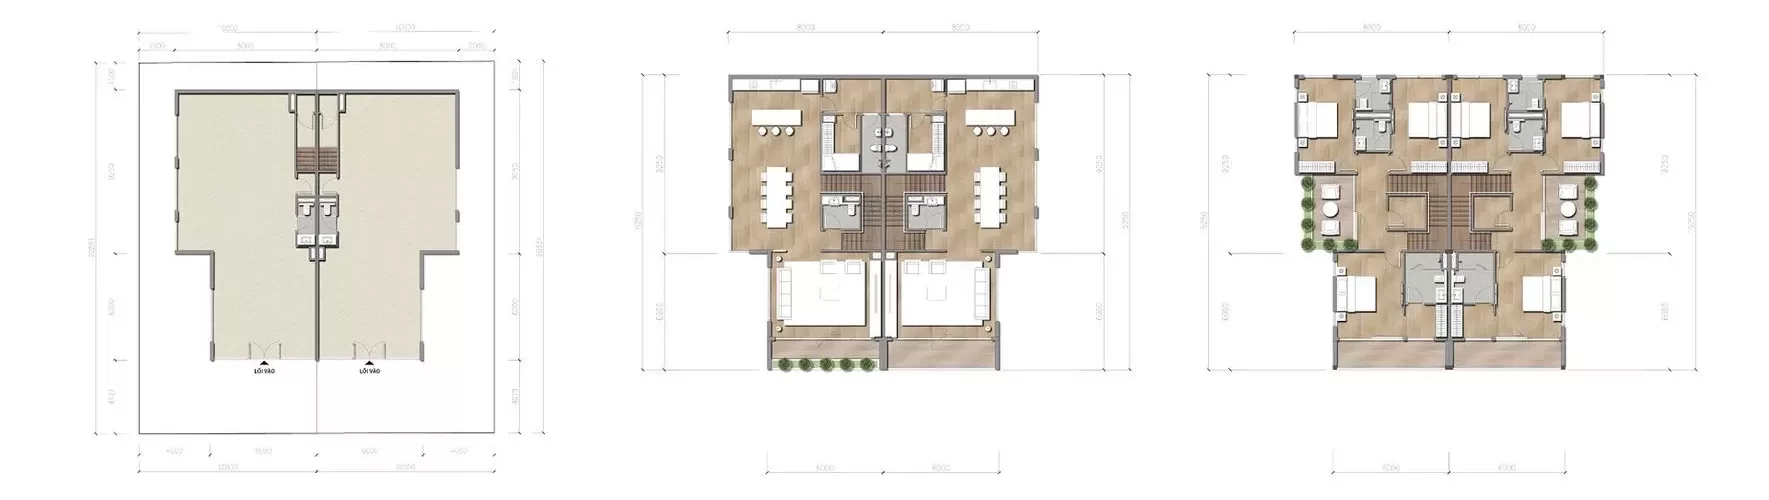 Biệt thự song lập - Khu thấp tầng Shop villas - dự án Sun Cosmo Residence Đà Nẵng.webp